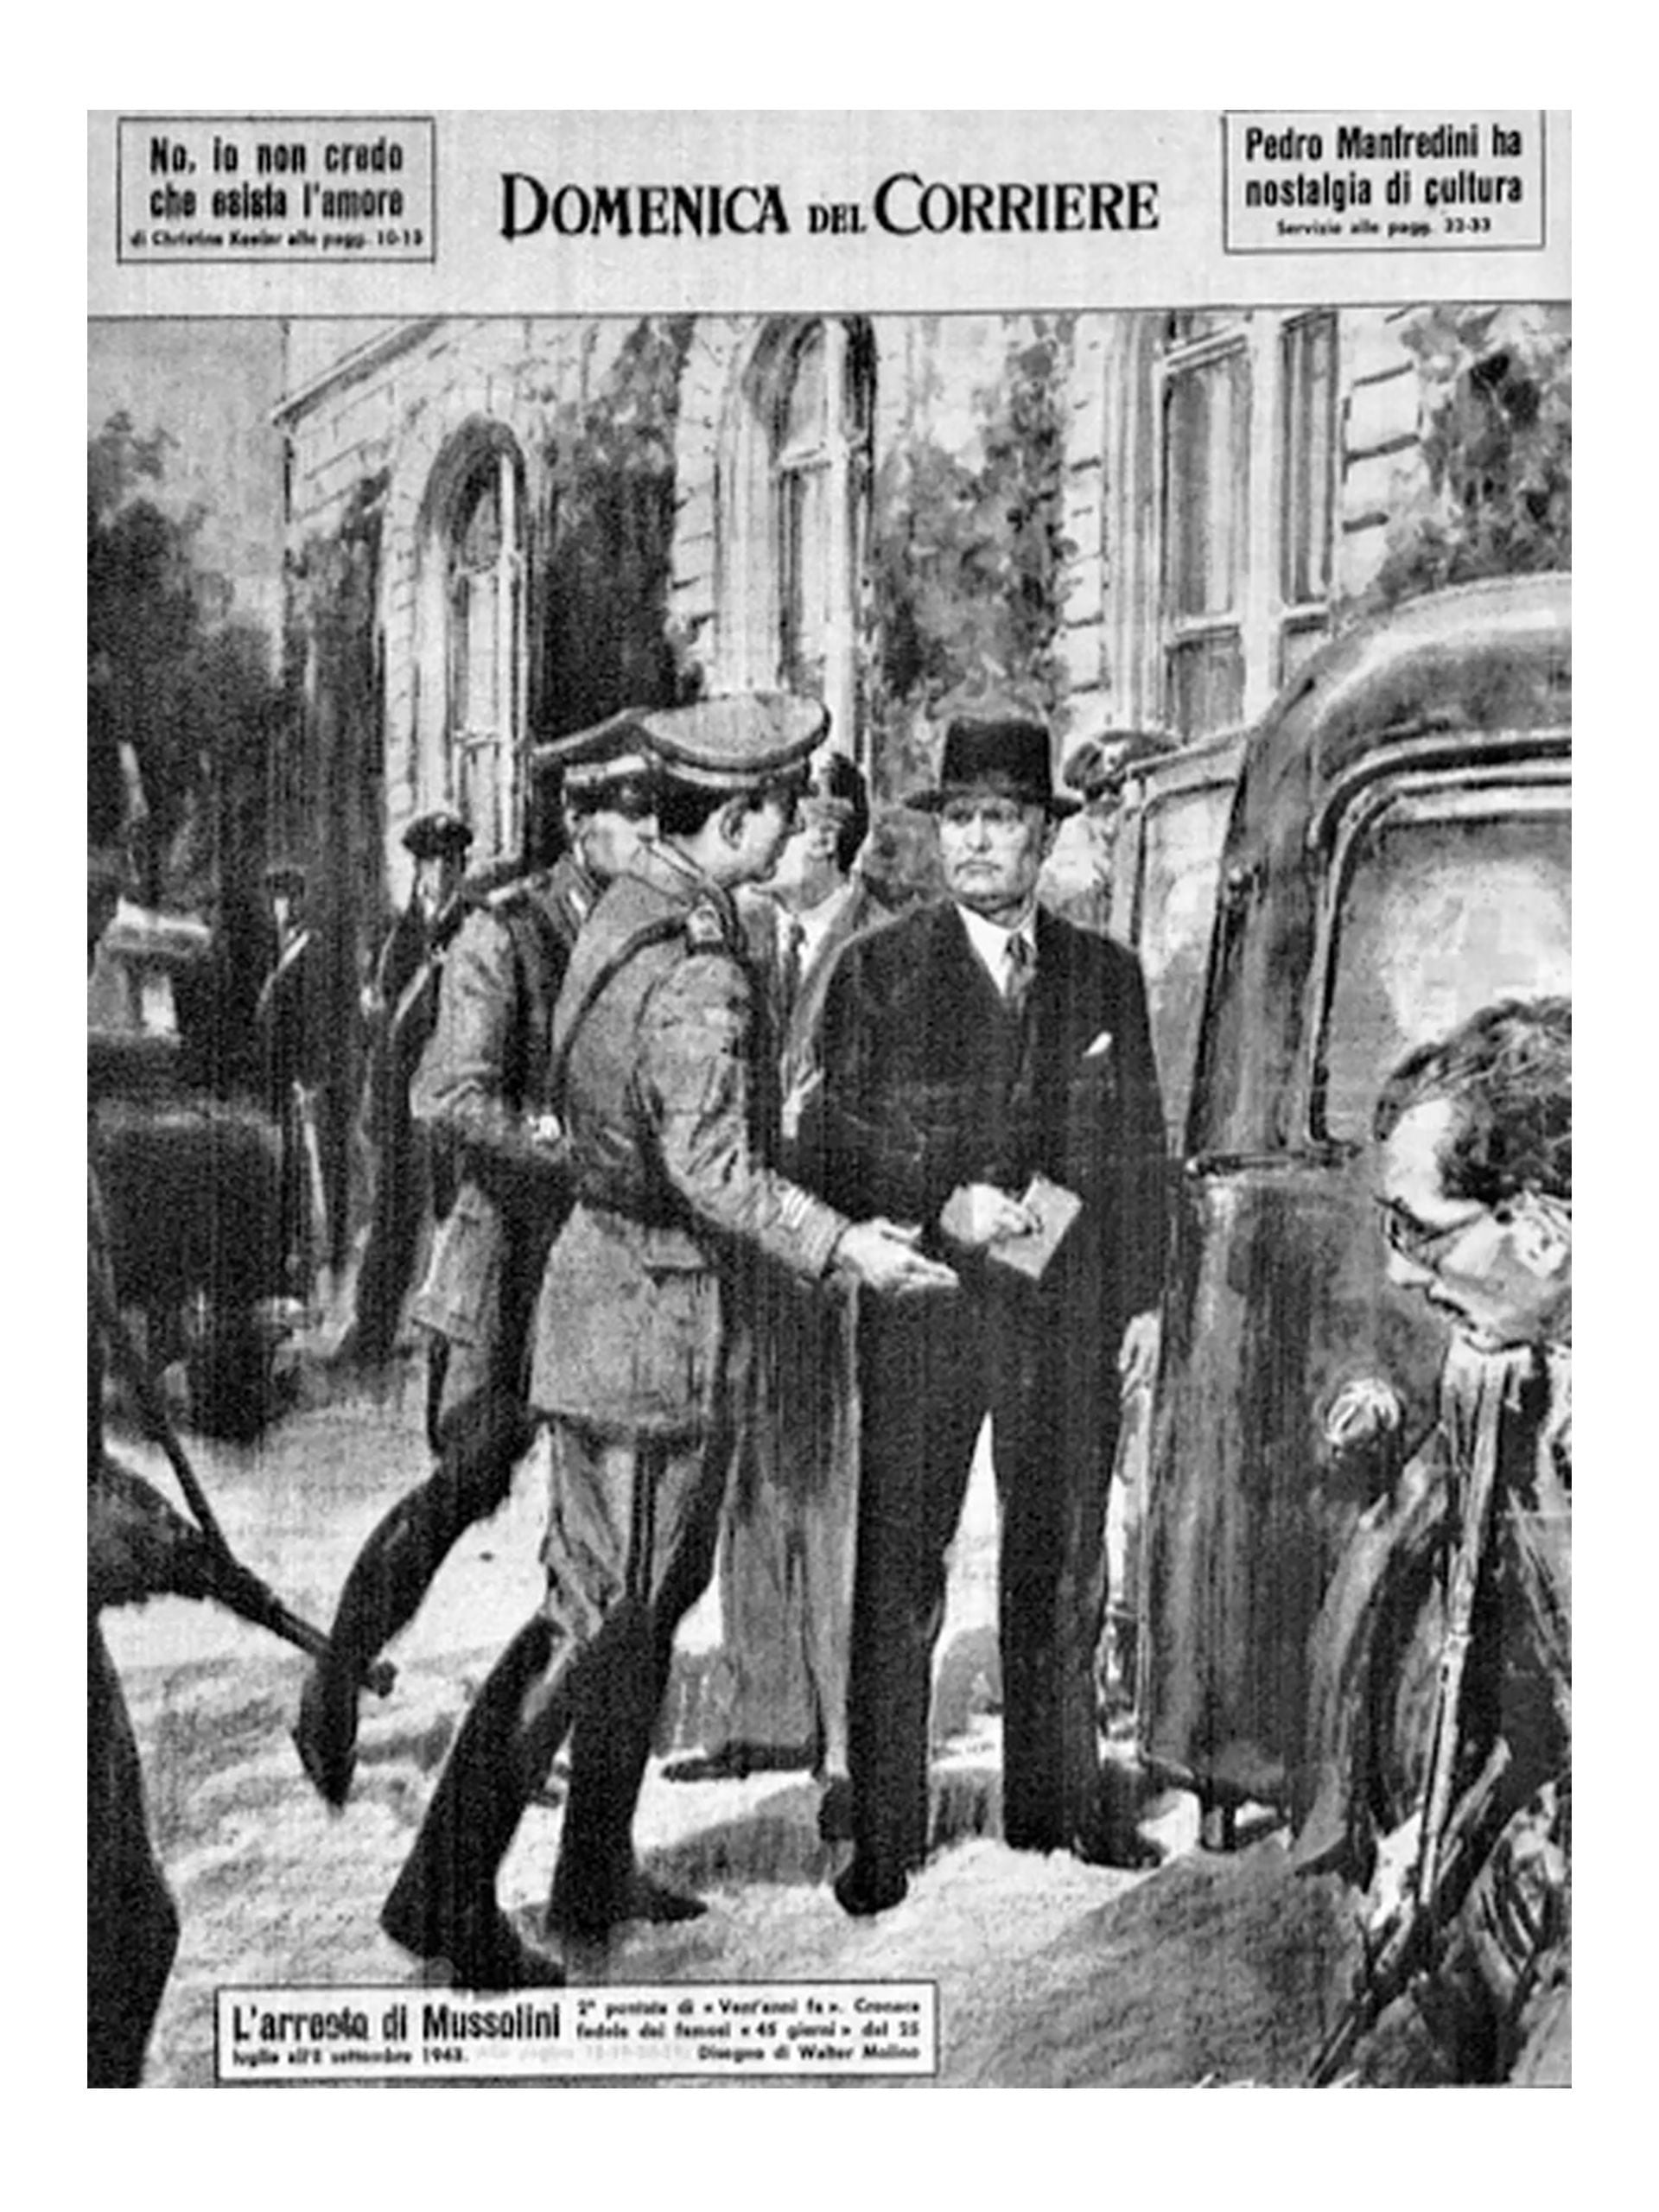 Así representó el diario "La Domenica del Corriere" la detención de Mussolini después de su reunión con el rey Vittorio Emanuele